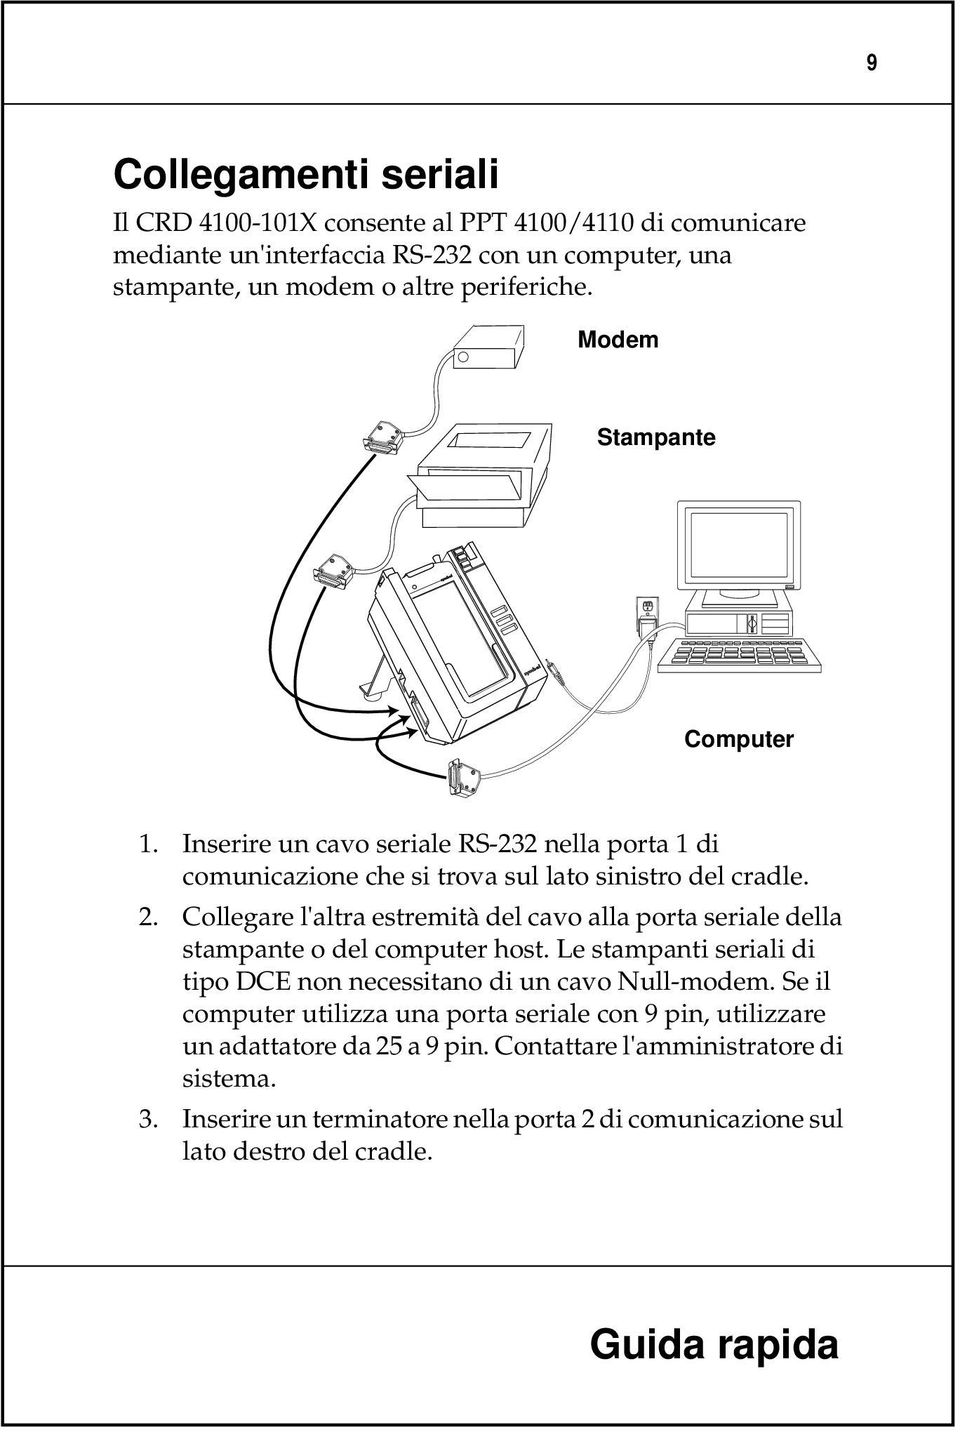 Collegare l'altra estremità del cavo alla porta seriale della stampante o del computer host. Le stampanti seriali di tipo DCE non necessitano di un cavo Null-modem.